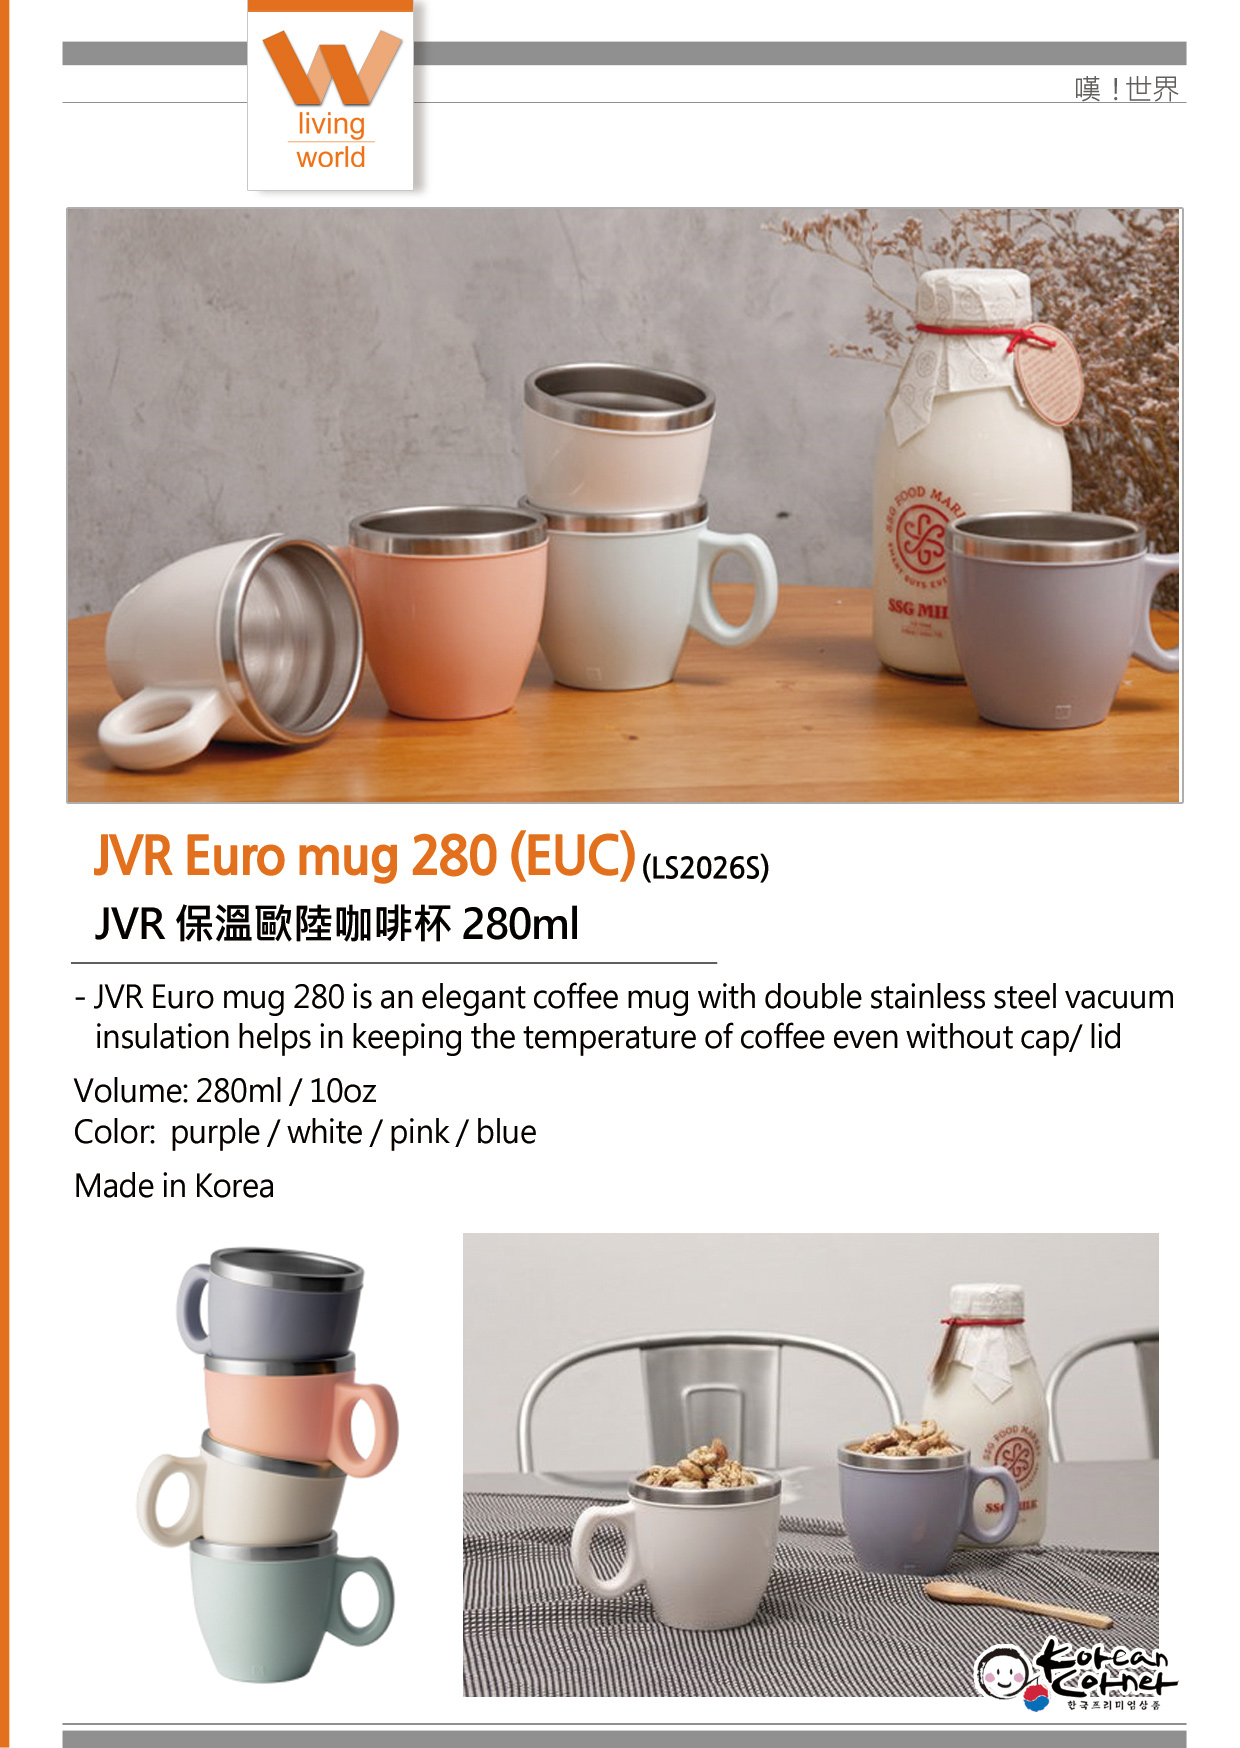 https://www.koreancorner.co.kr/wp-content/uploads/2018/06/JVR-Euro-mug-280-EUC_e.jpg